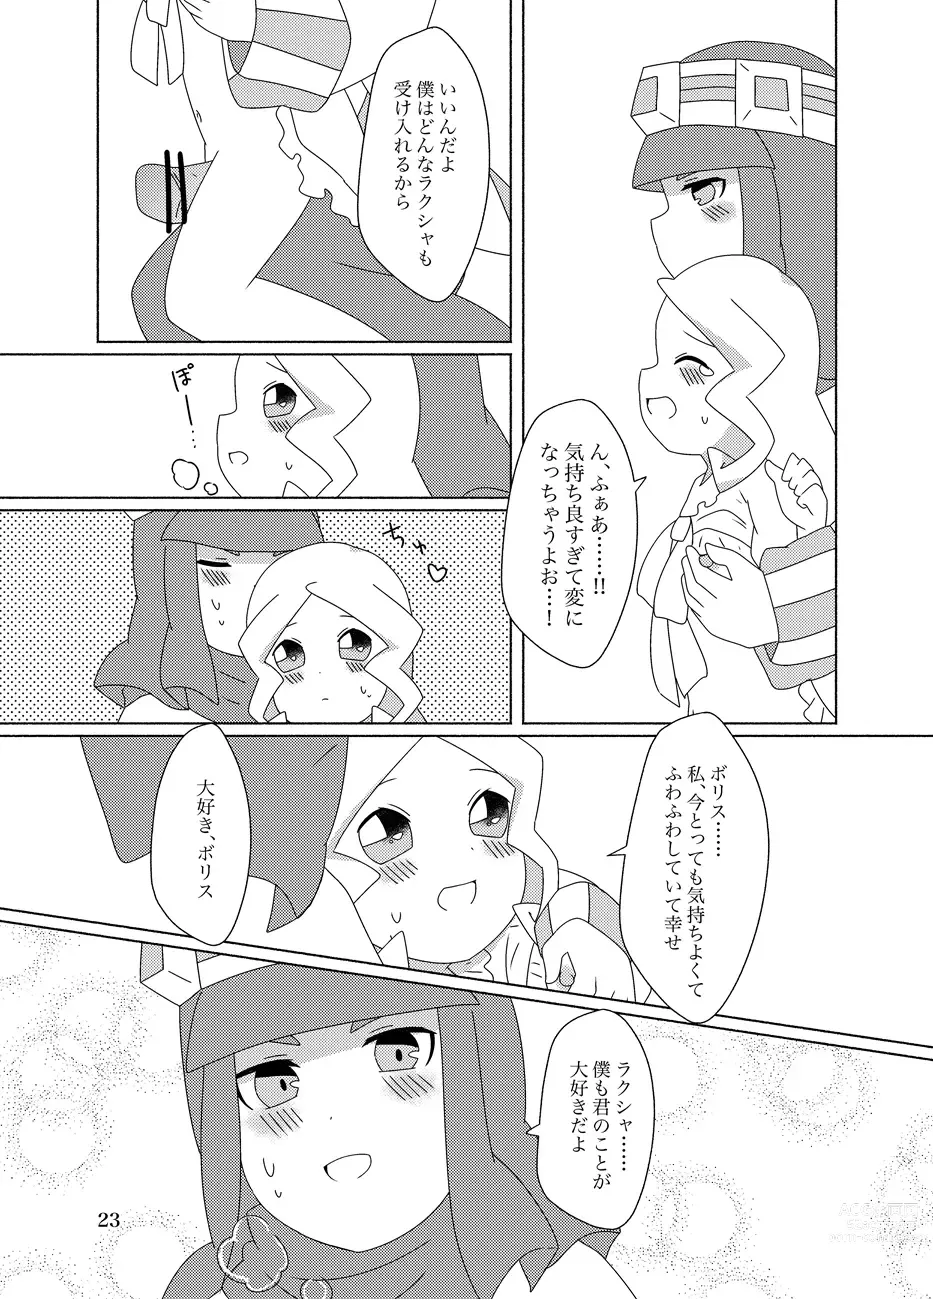 Page 23 of doujinshi Hachimitsu Sake to Milk